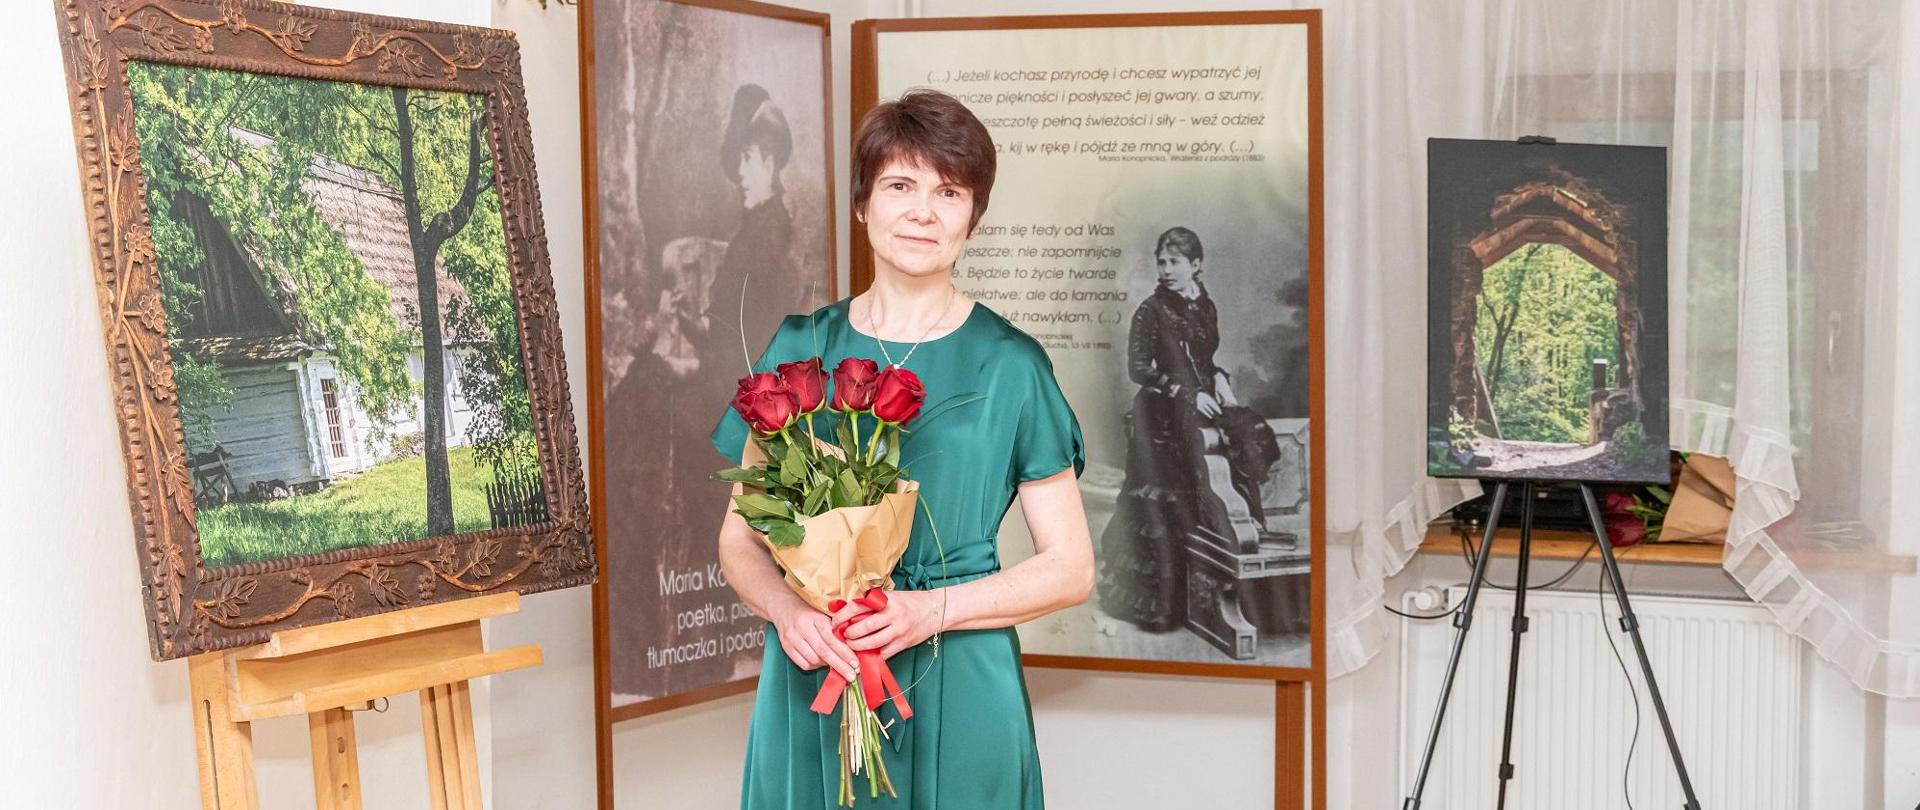 Na zdjęciu stoi słuchaczka Studium w zielonej sukience. W rękach trzyma czerwone róże. W tle obrazy i zdjęcia.